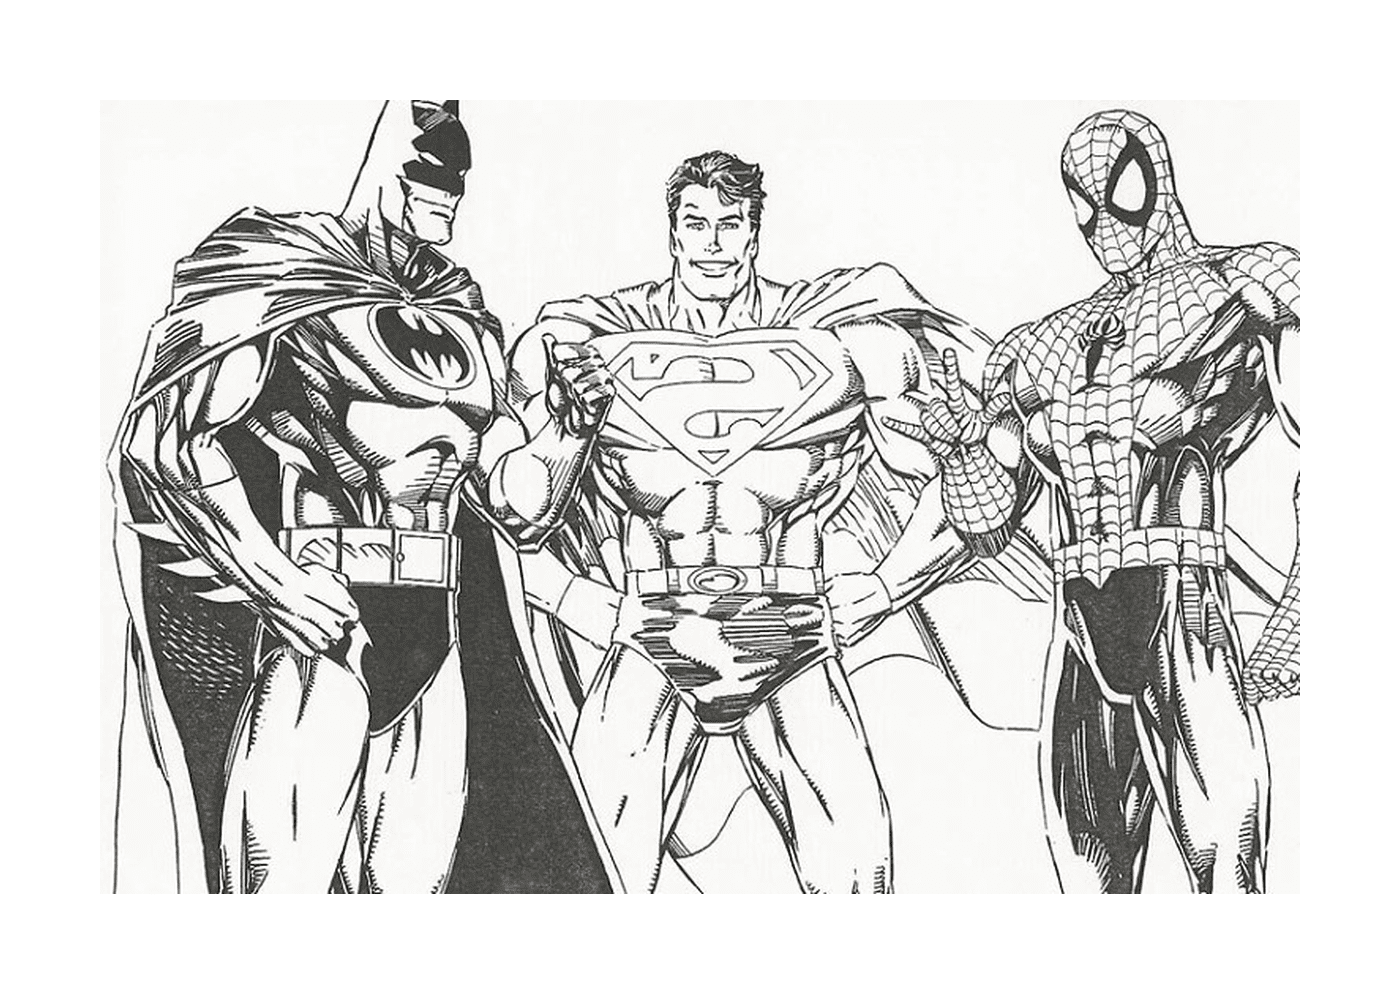  सुपरहेरोस का एक समूह पक्ष के साथ खड़ा है, जिसमें रोमियो, मकड़ी और सुपरमैन शामिल हैं 